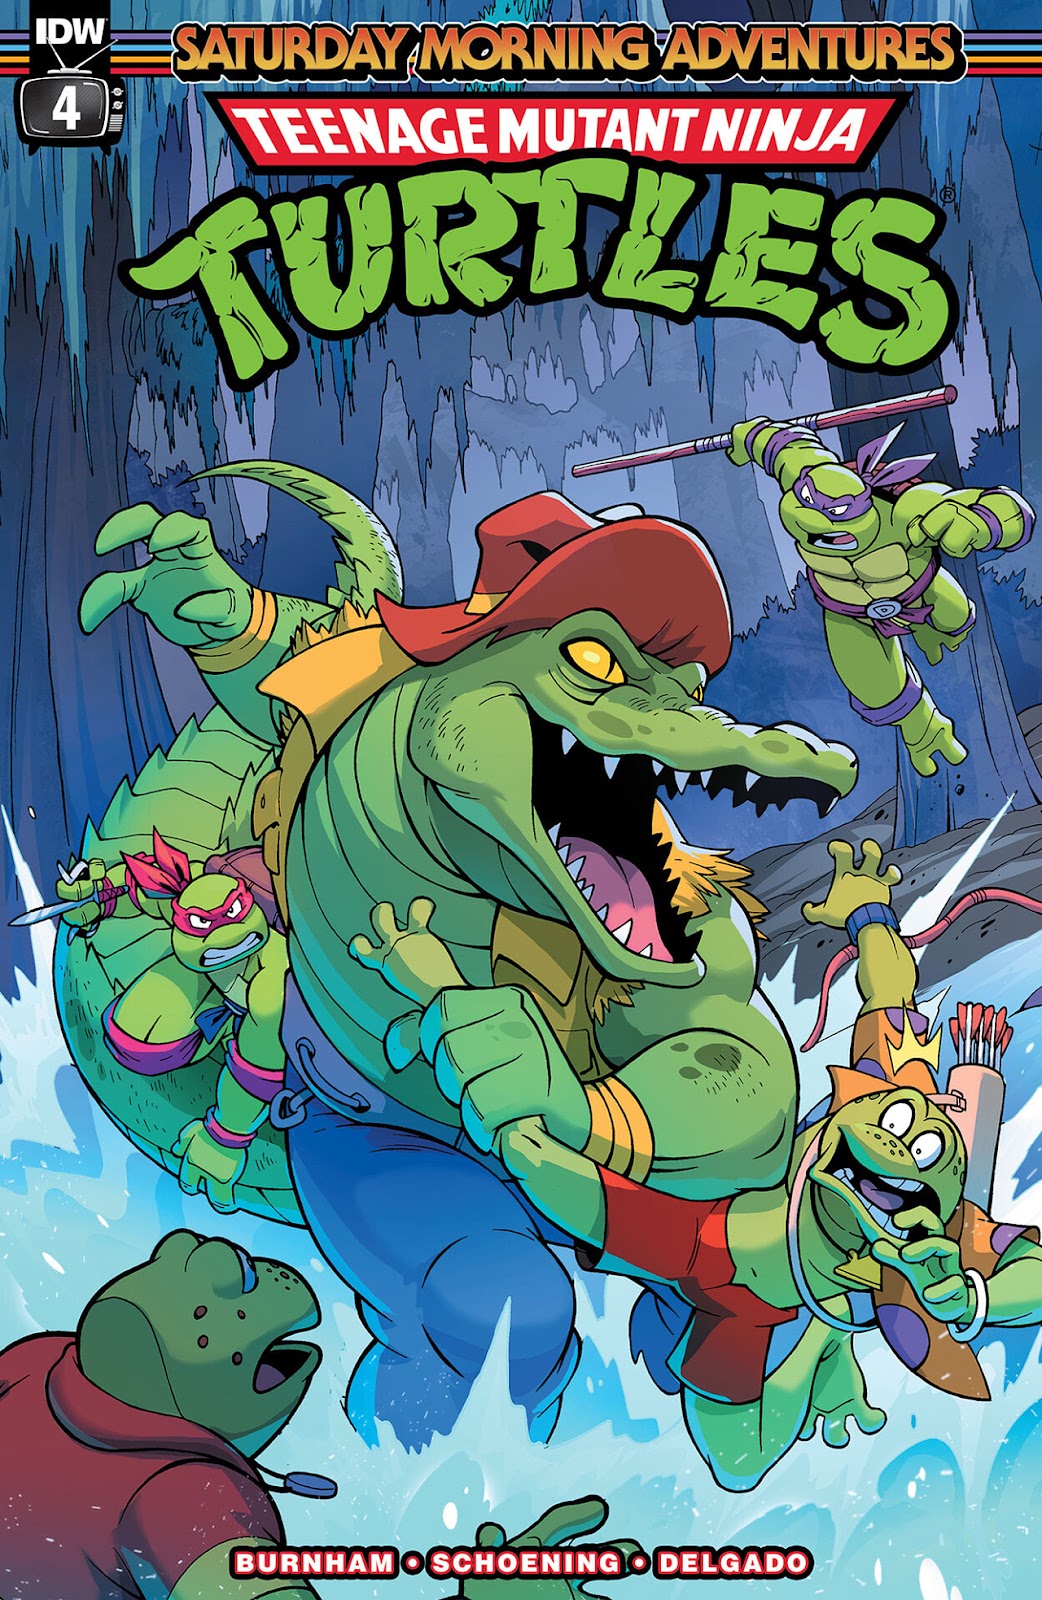 Teenage Mutant Ninja Turtles: Saturday Morning Adventures Continued issue 4 - Page 1